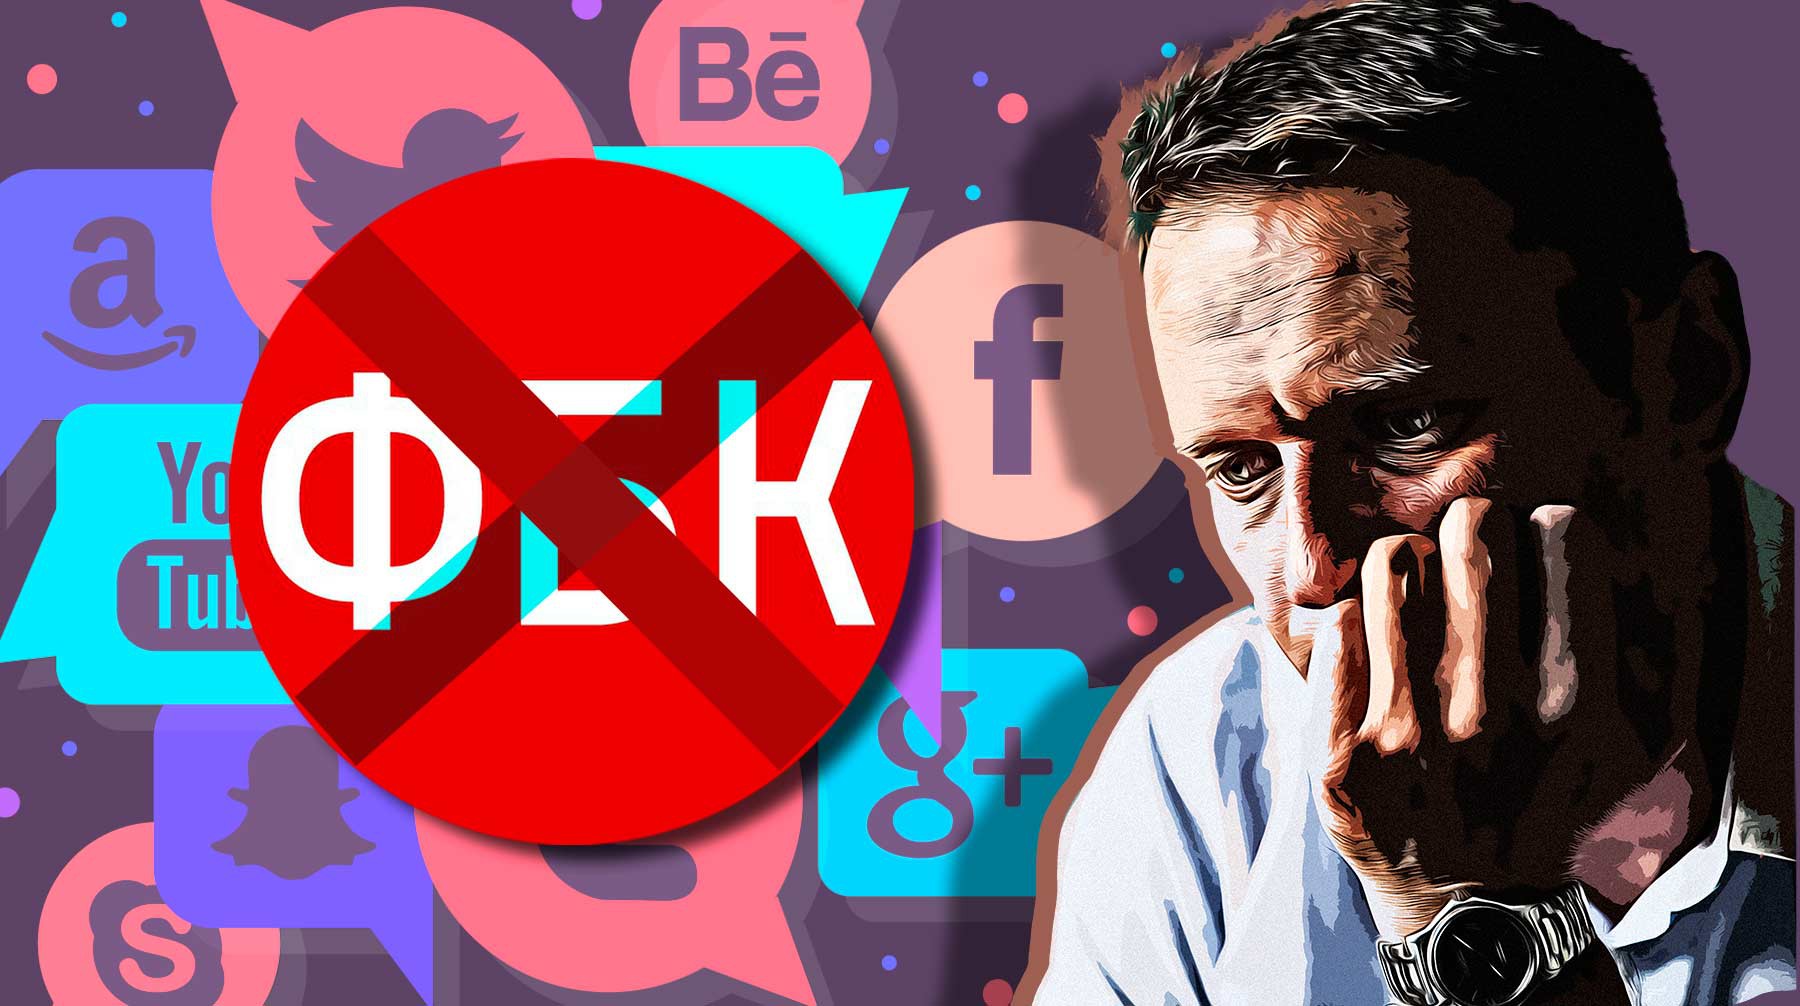 Dailystorm - Штабы Навального проведут «ребрендинг» в соцсетях и передадут пароли руководству